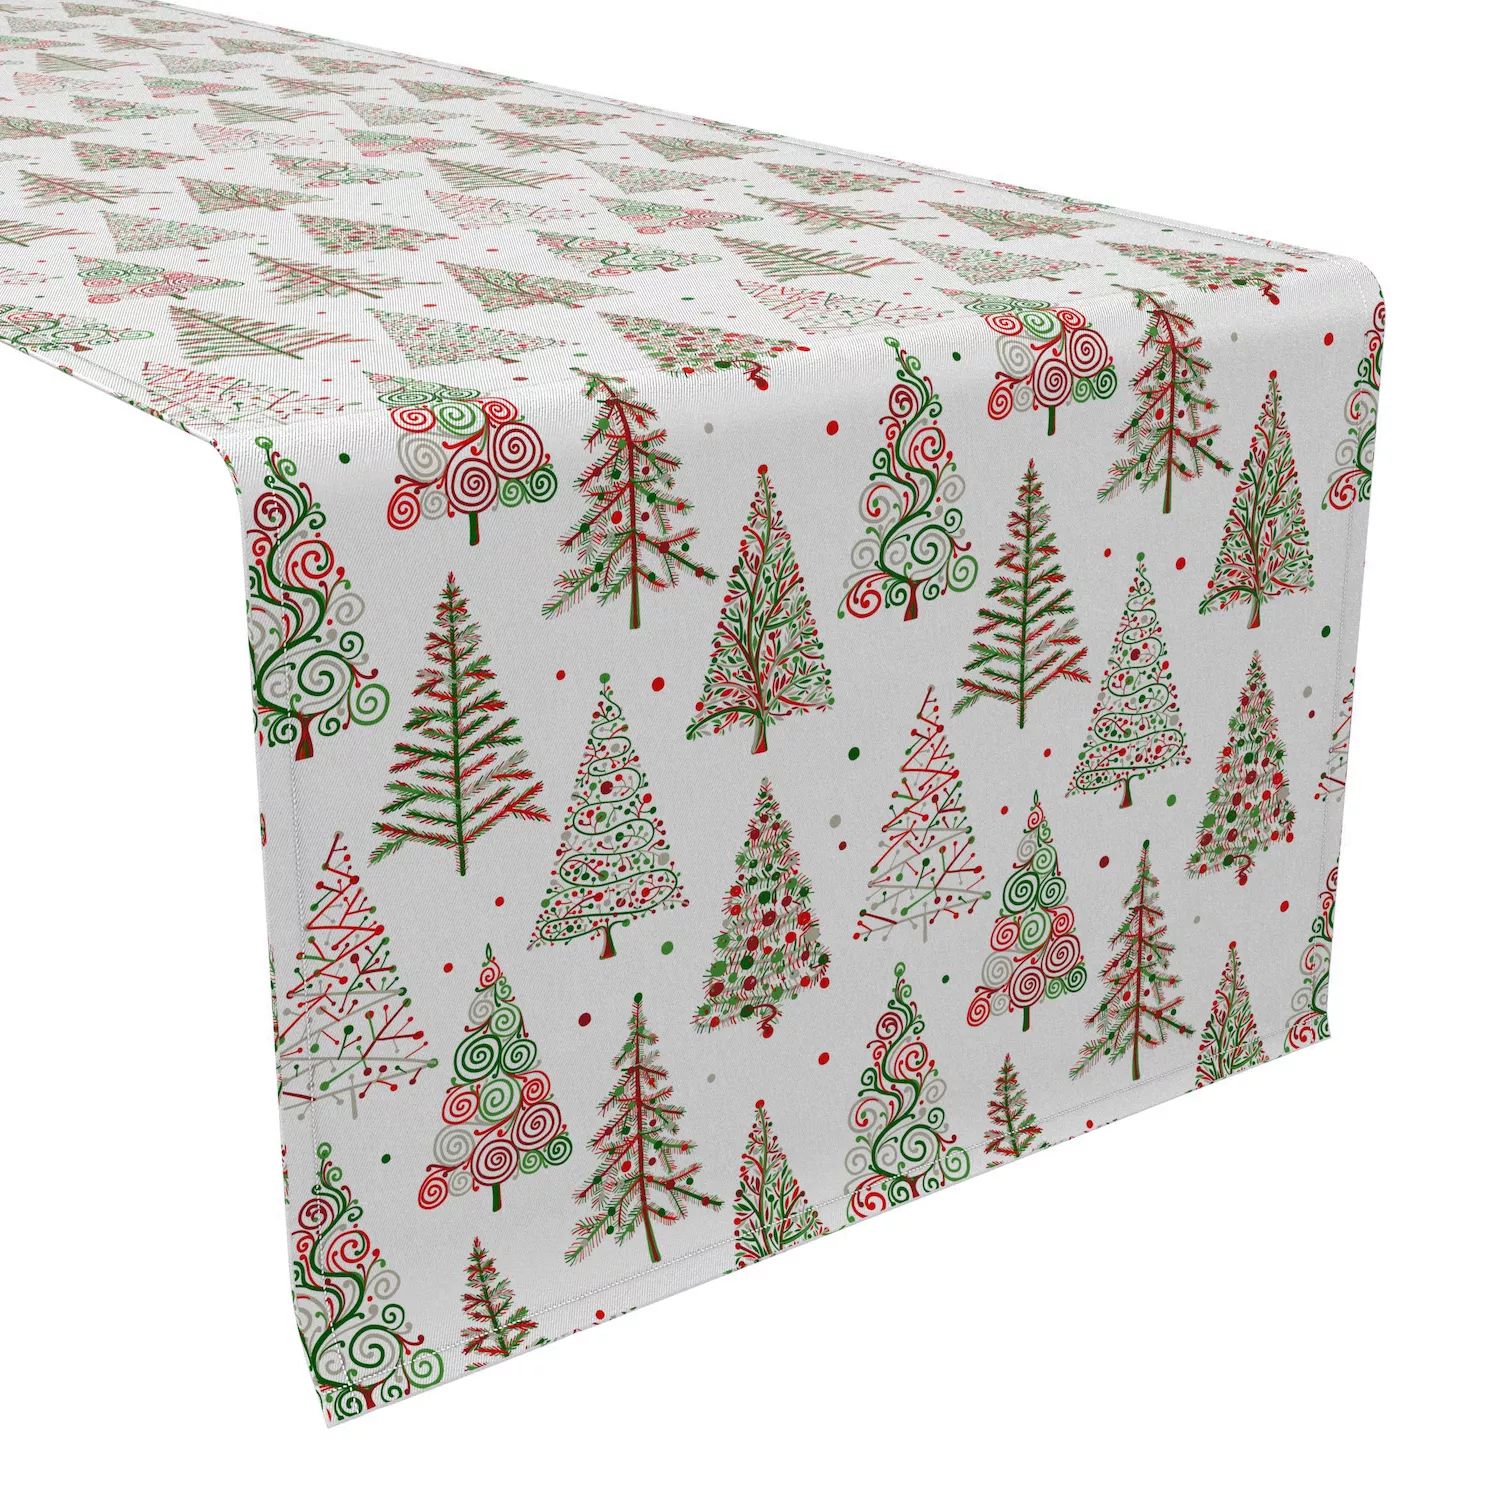 Дорожка для стола, 100 % хлопок, 16x108 дюймов, узоры в виде красной и зеленой рождественской елки.